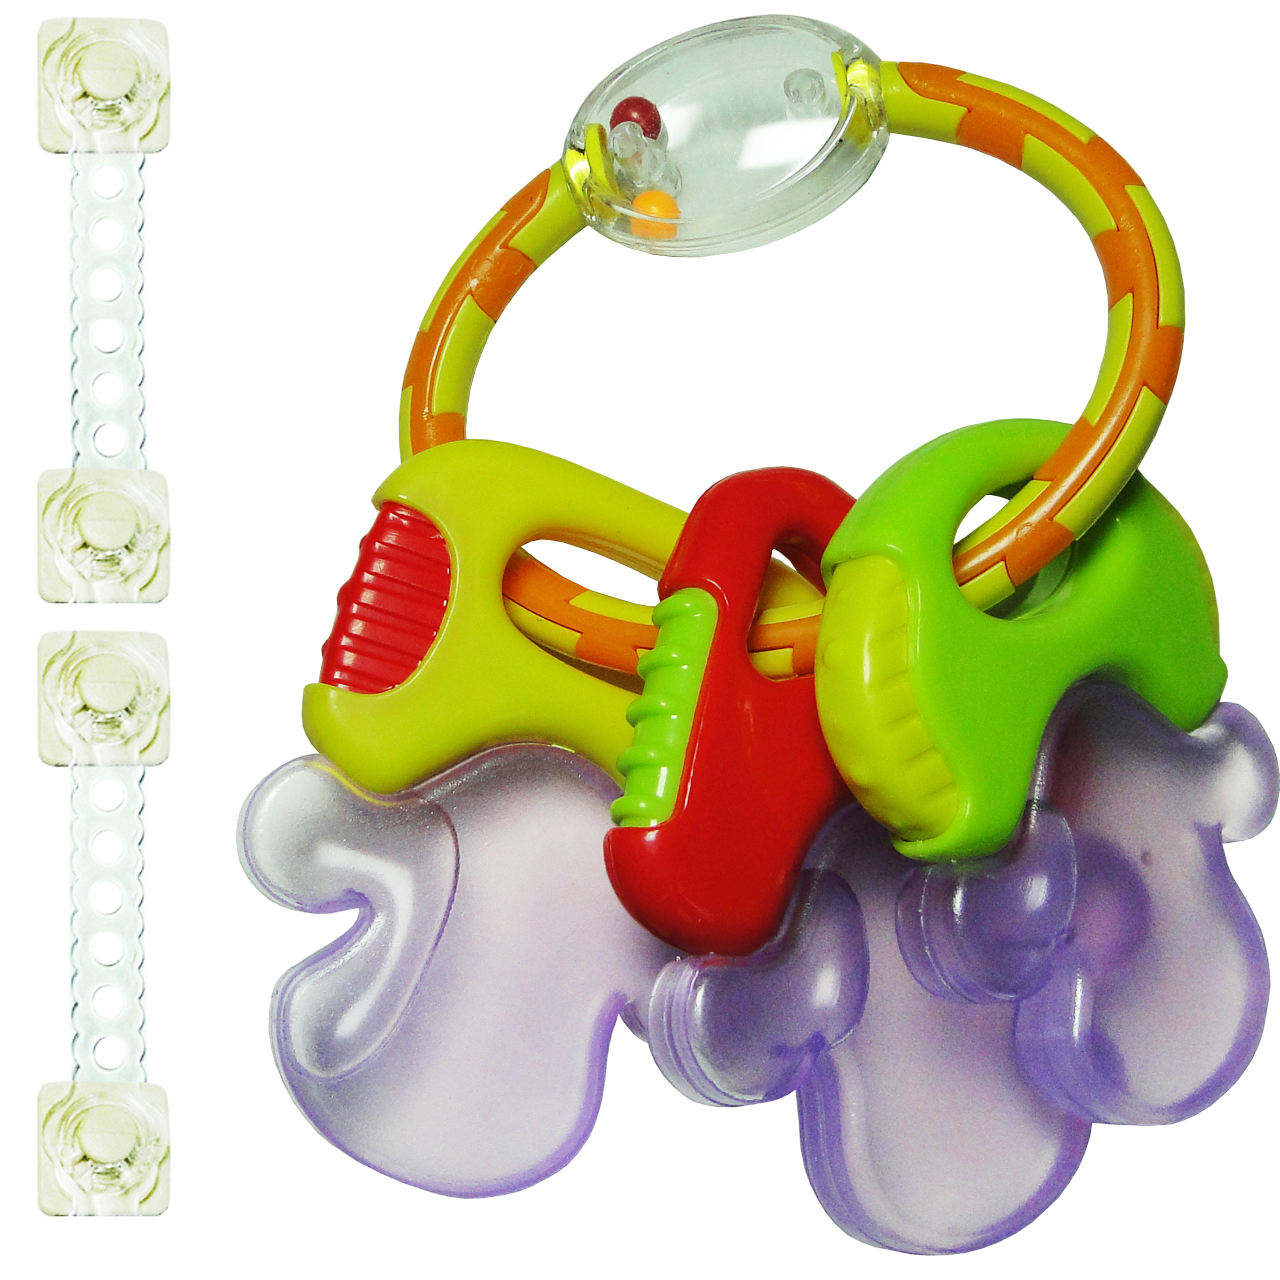 دندان گیر نوزاد- کودک -لوازم نوزاد دندان گیر و جغجغه مدل Toys Wordهمراه2عدد قفل کابینت مدل ایمن ساز